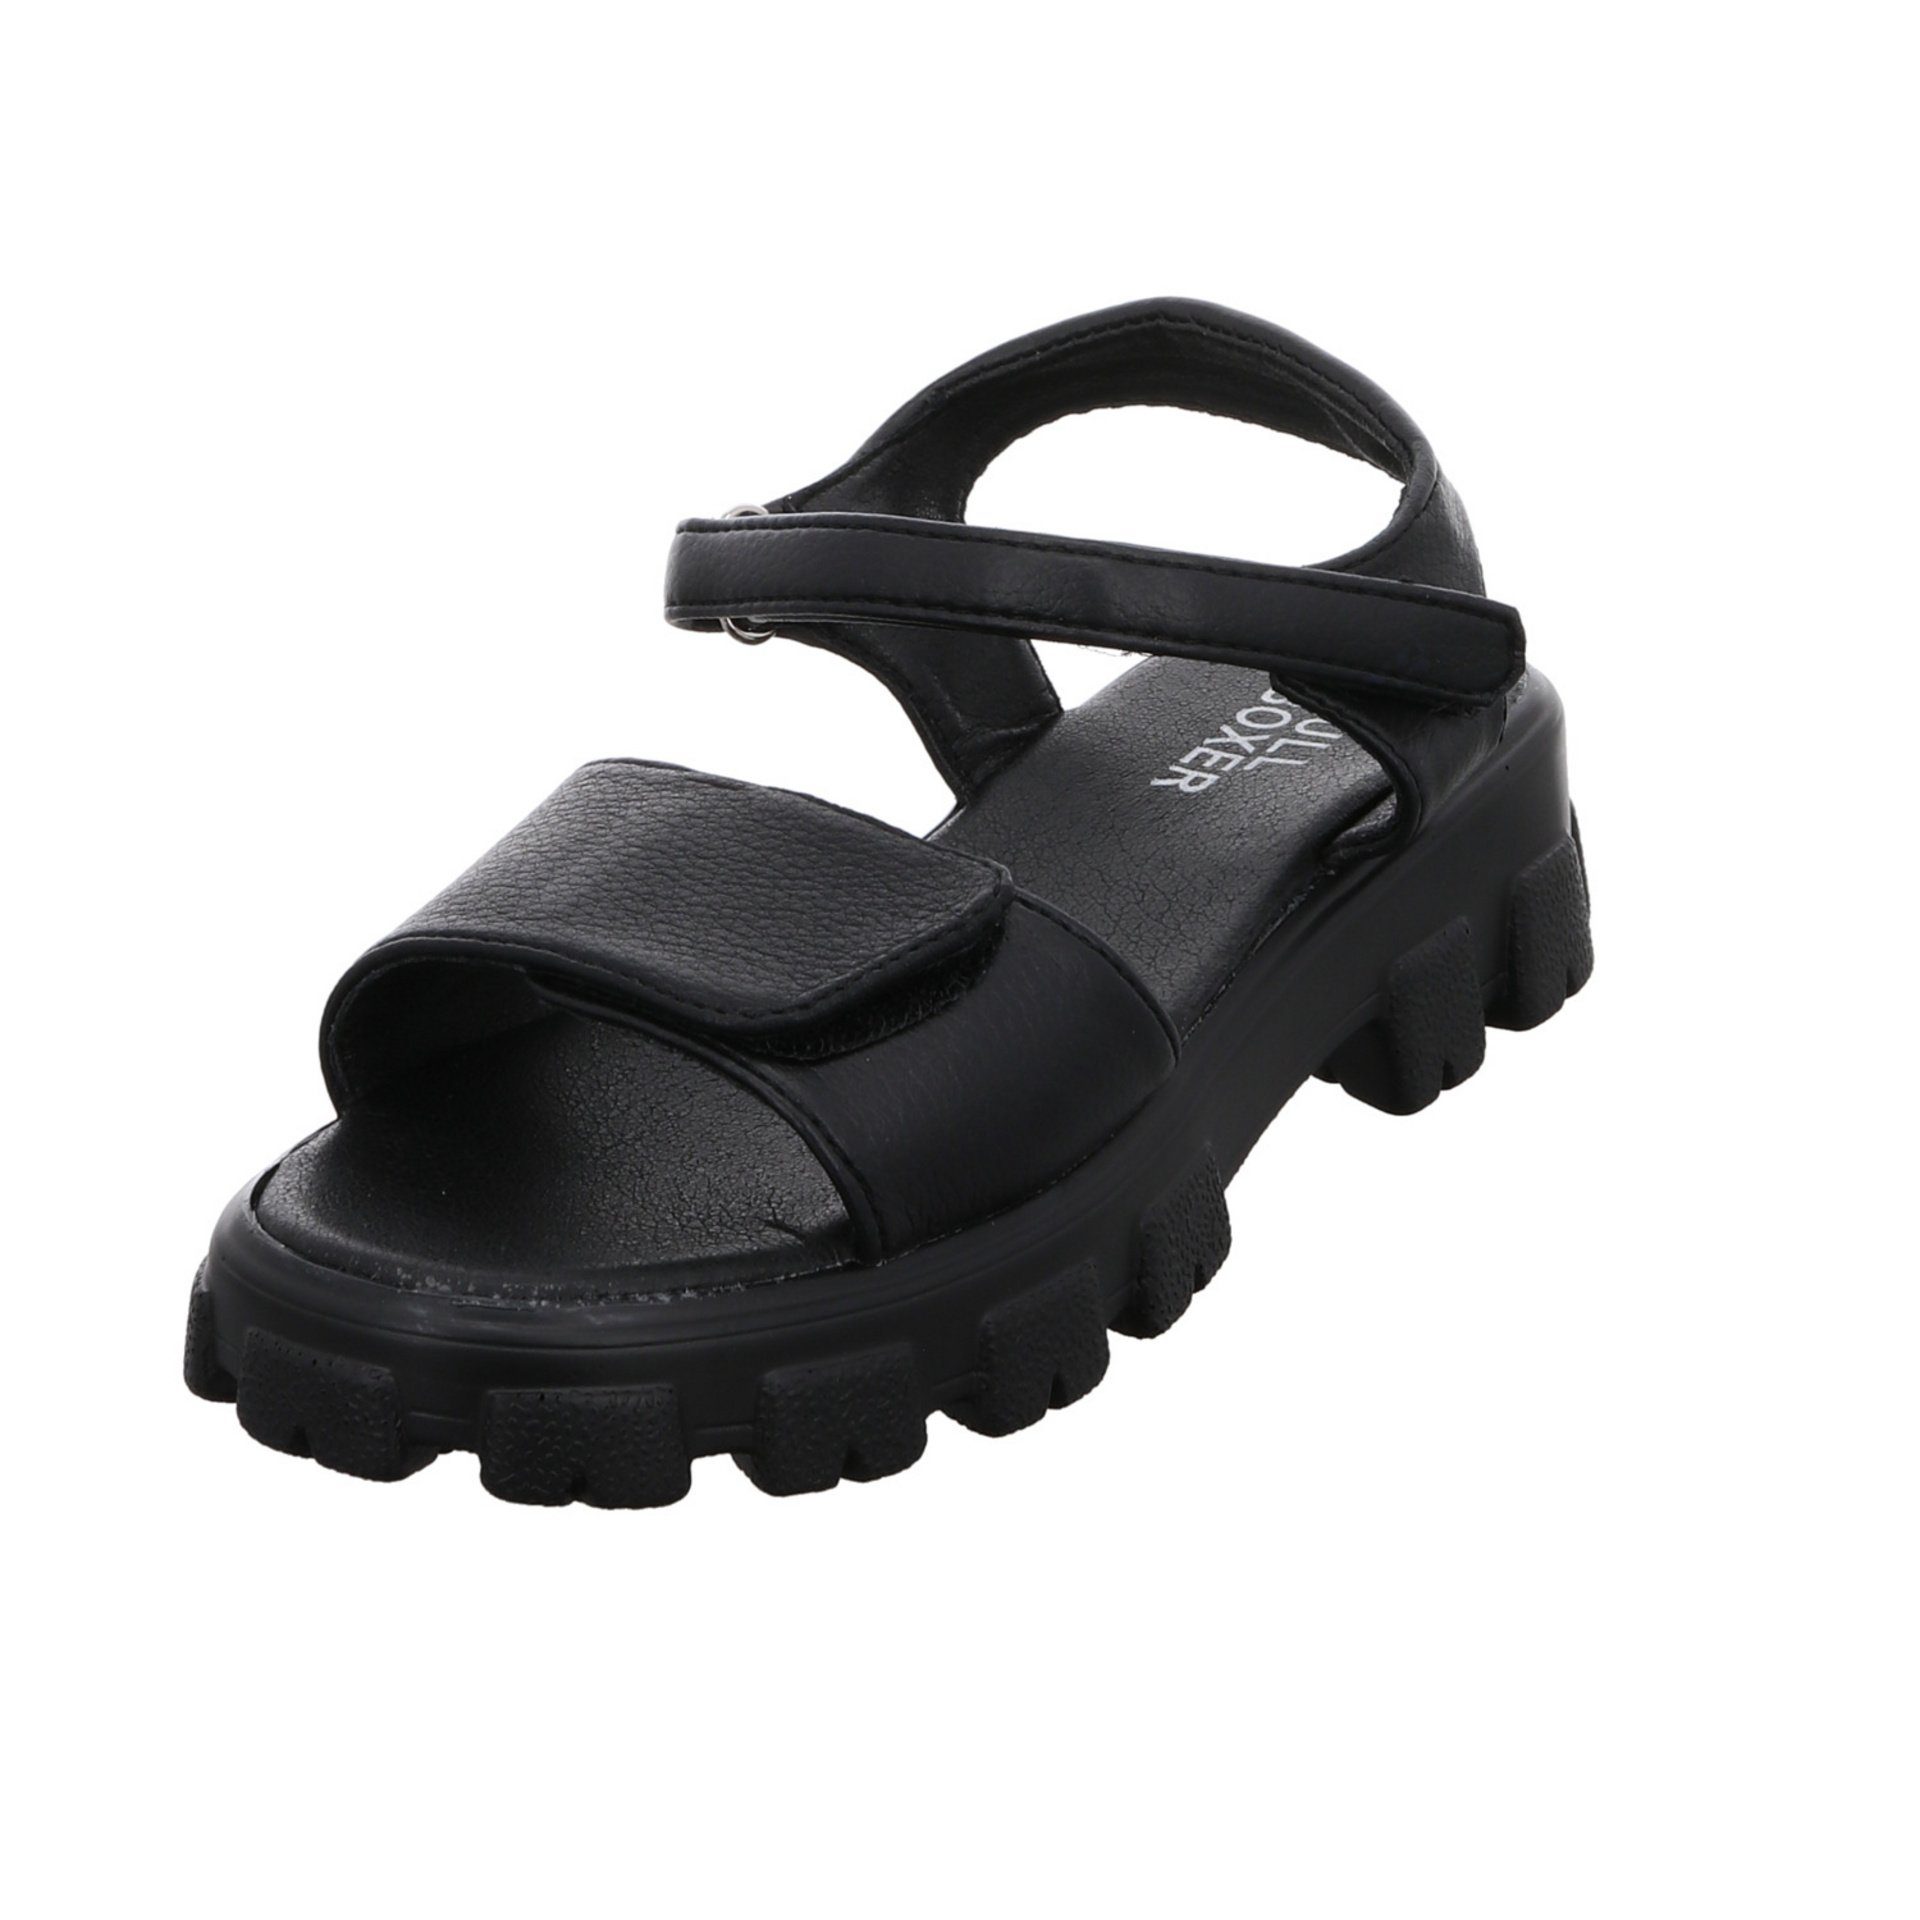 Bullboxer Mädchen Sandalen Schuhe Sandale Kinderschuhe Sandale Synthetik schwarz dunkel